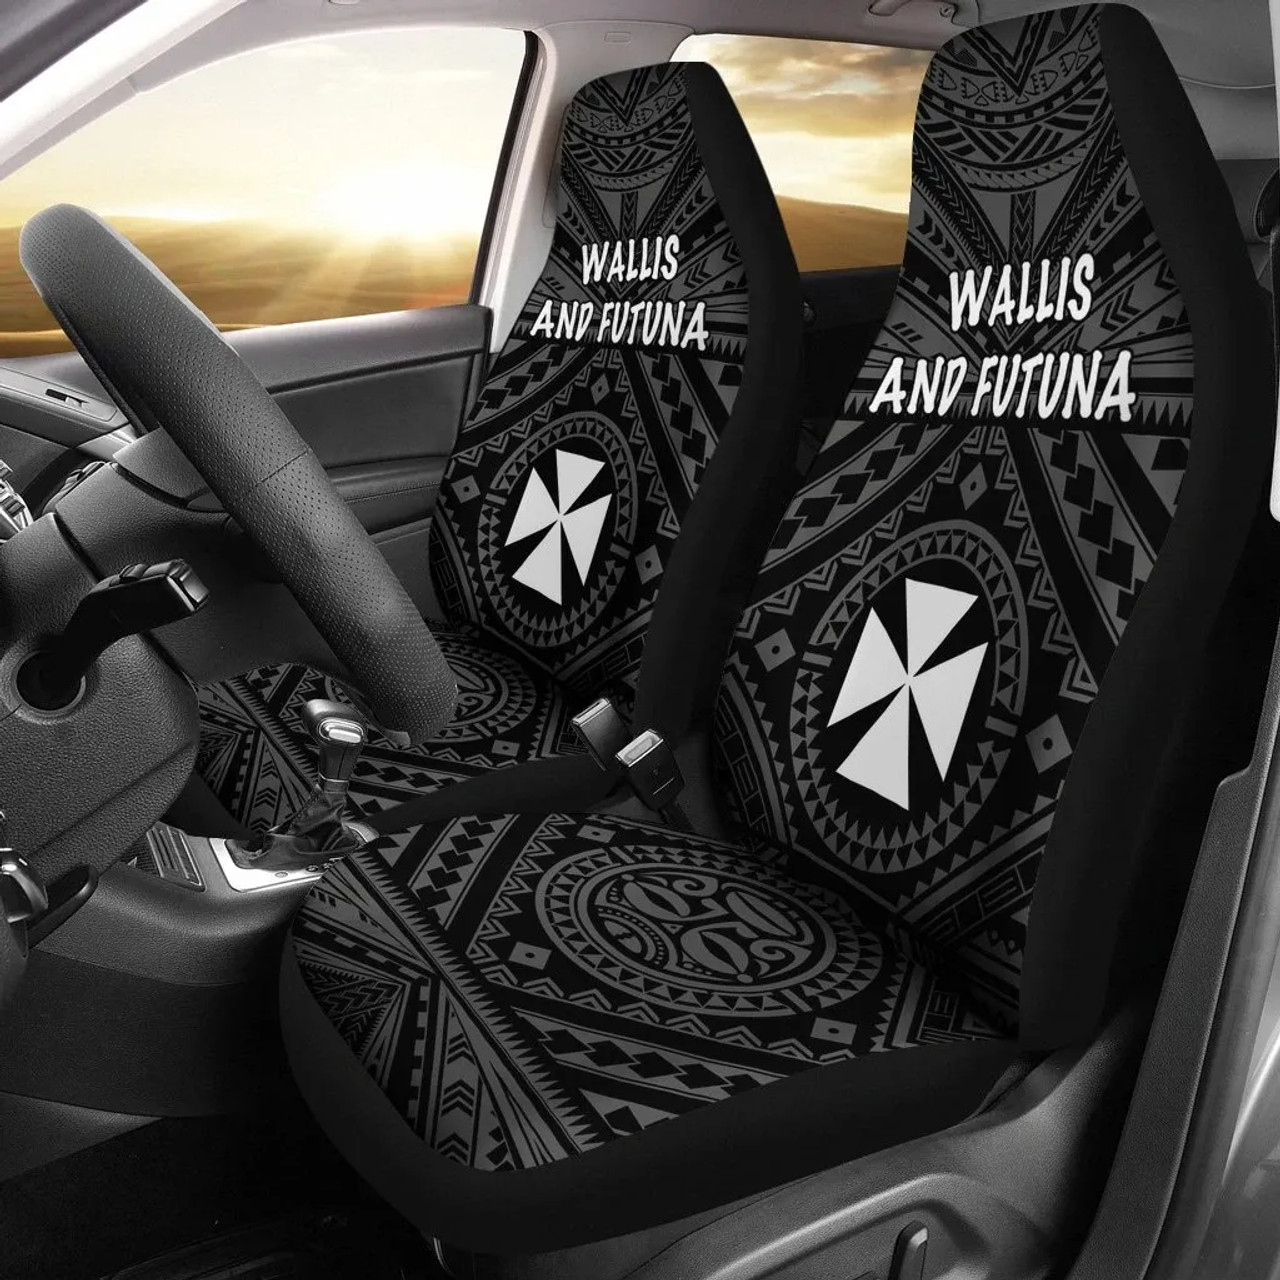 Wallis and Futuna Car Seat Covers - Wallis and Futuna Seal With Polynesian Tattoo Style